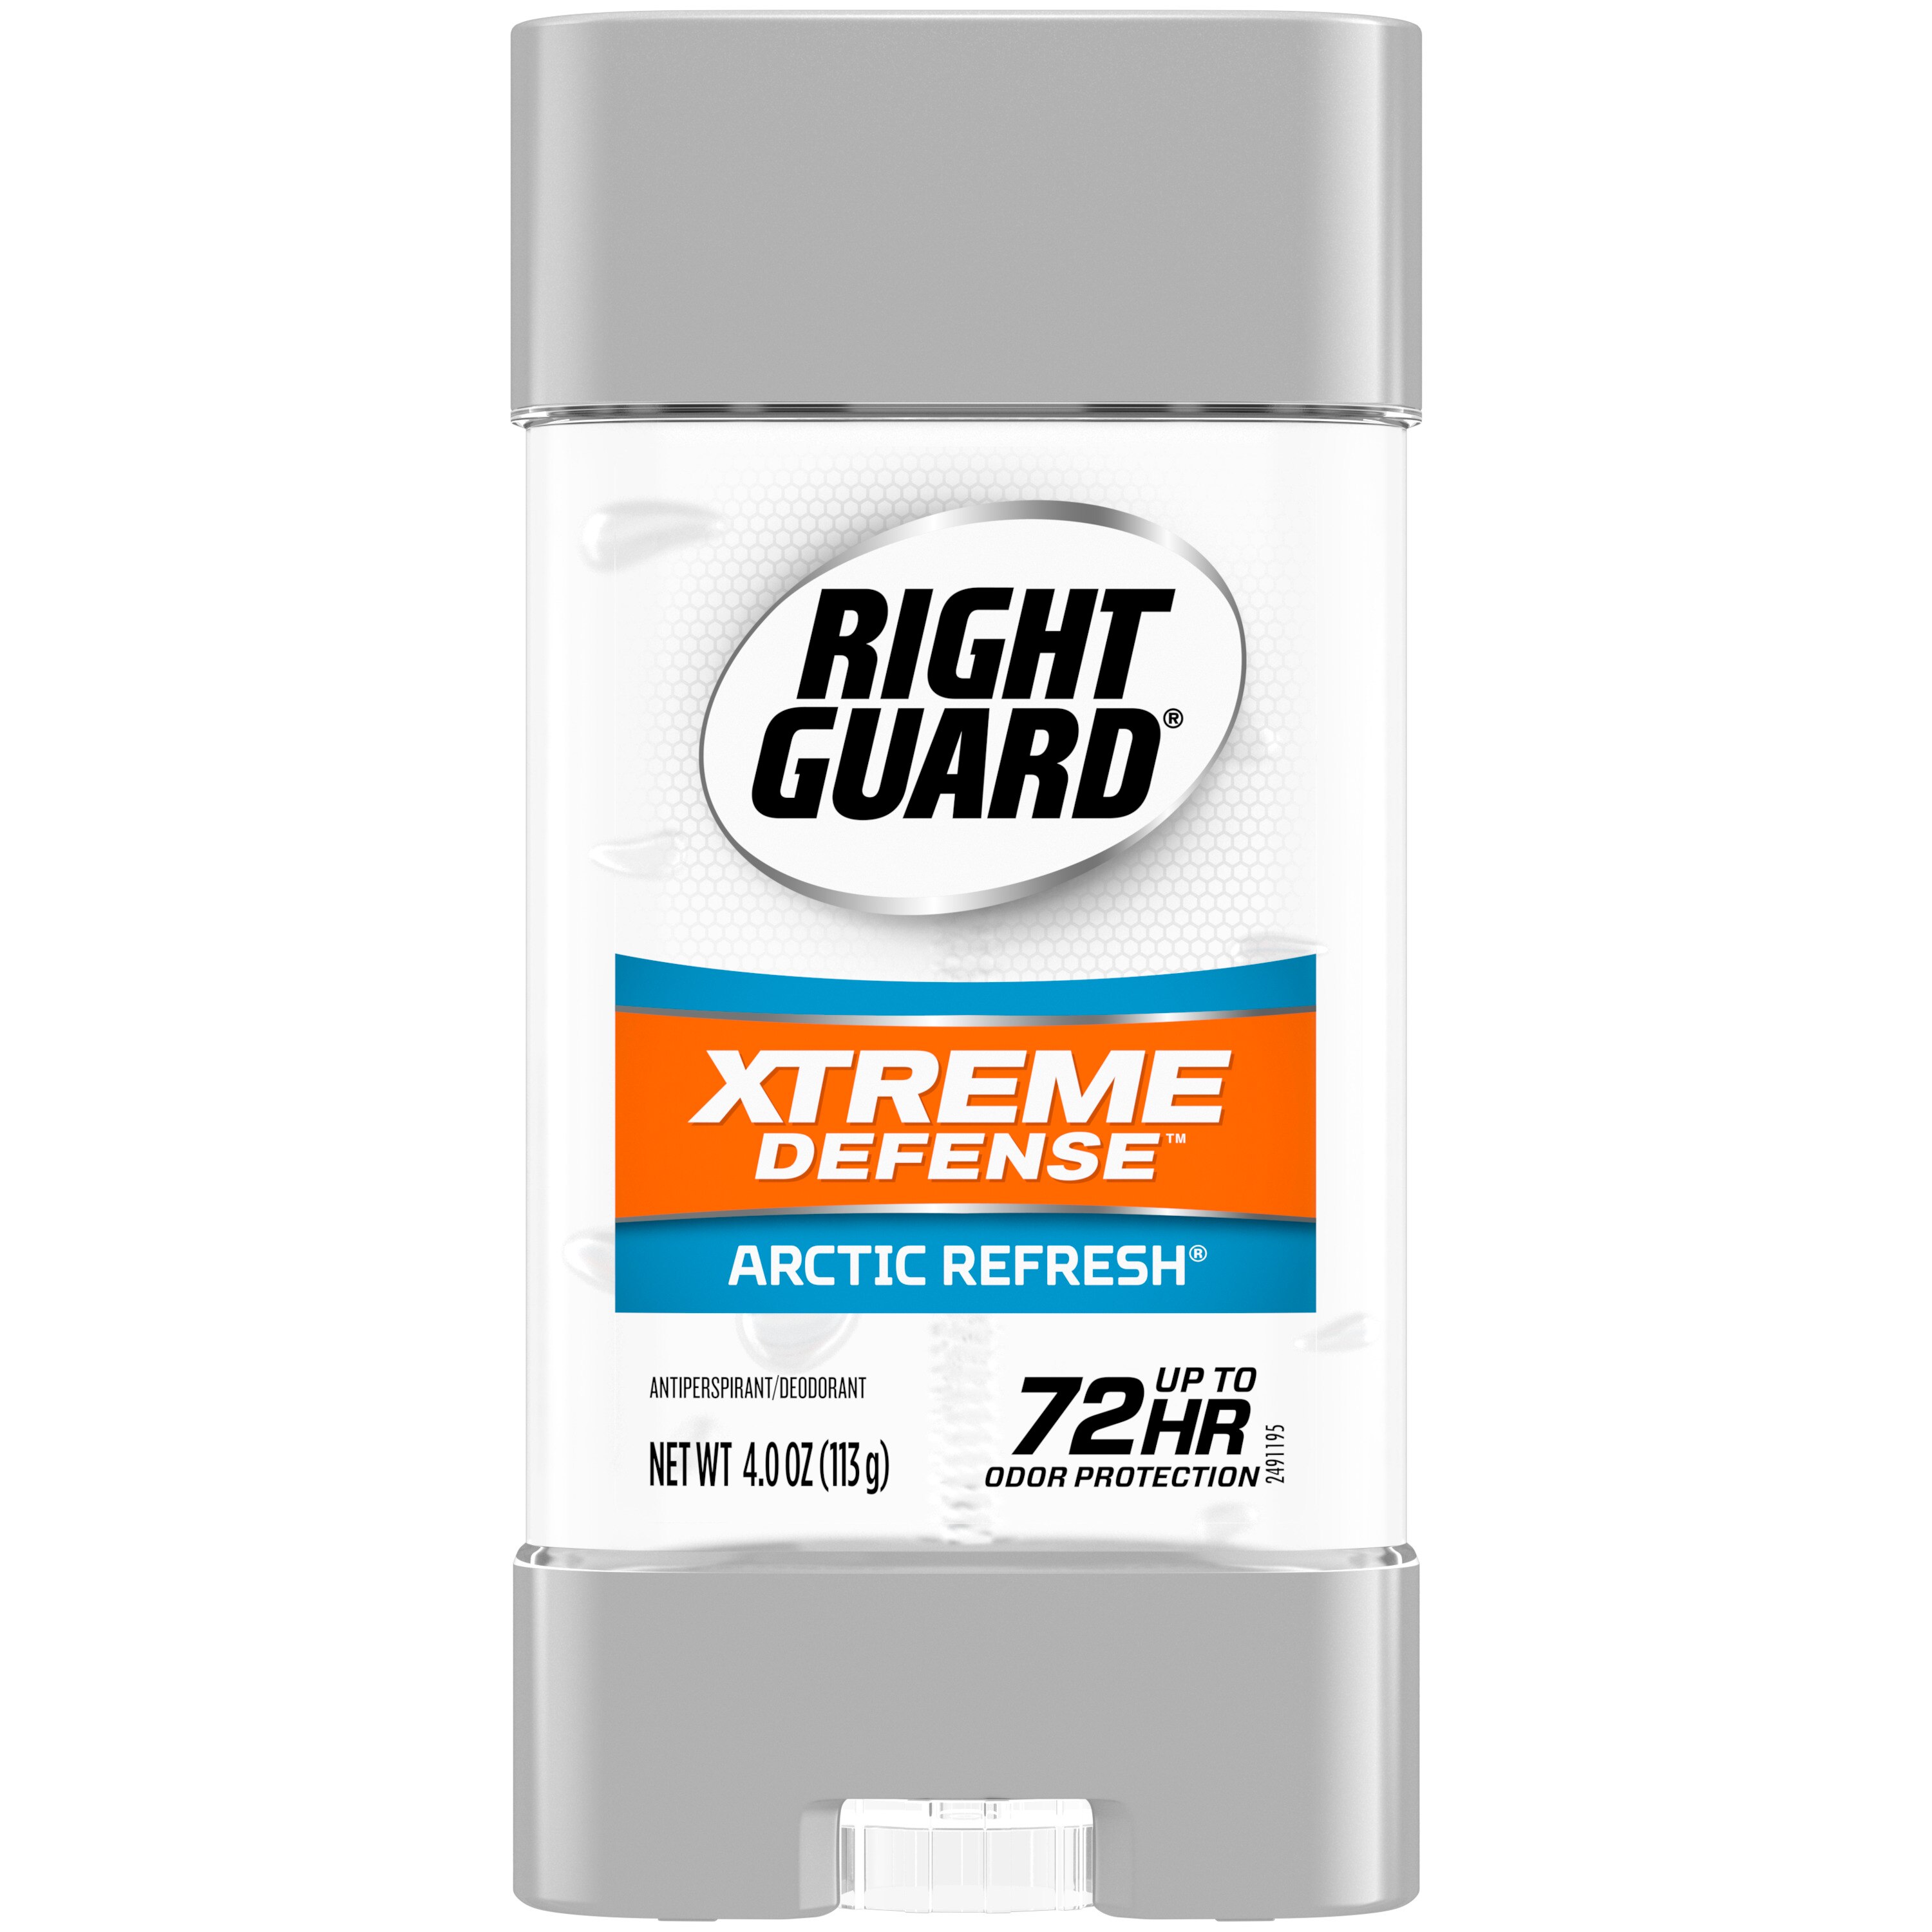 Right Guard Total Defense 5 Power Gel Antiperspirant & Deodorant